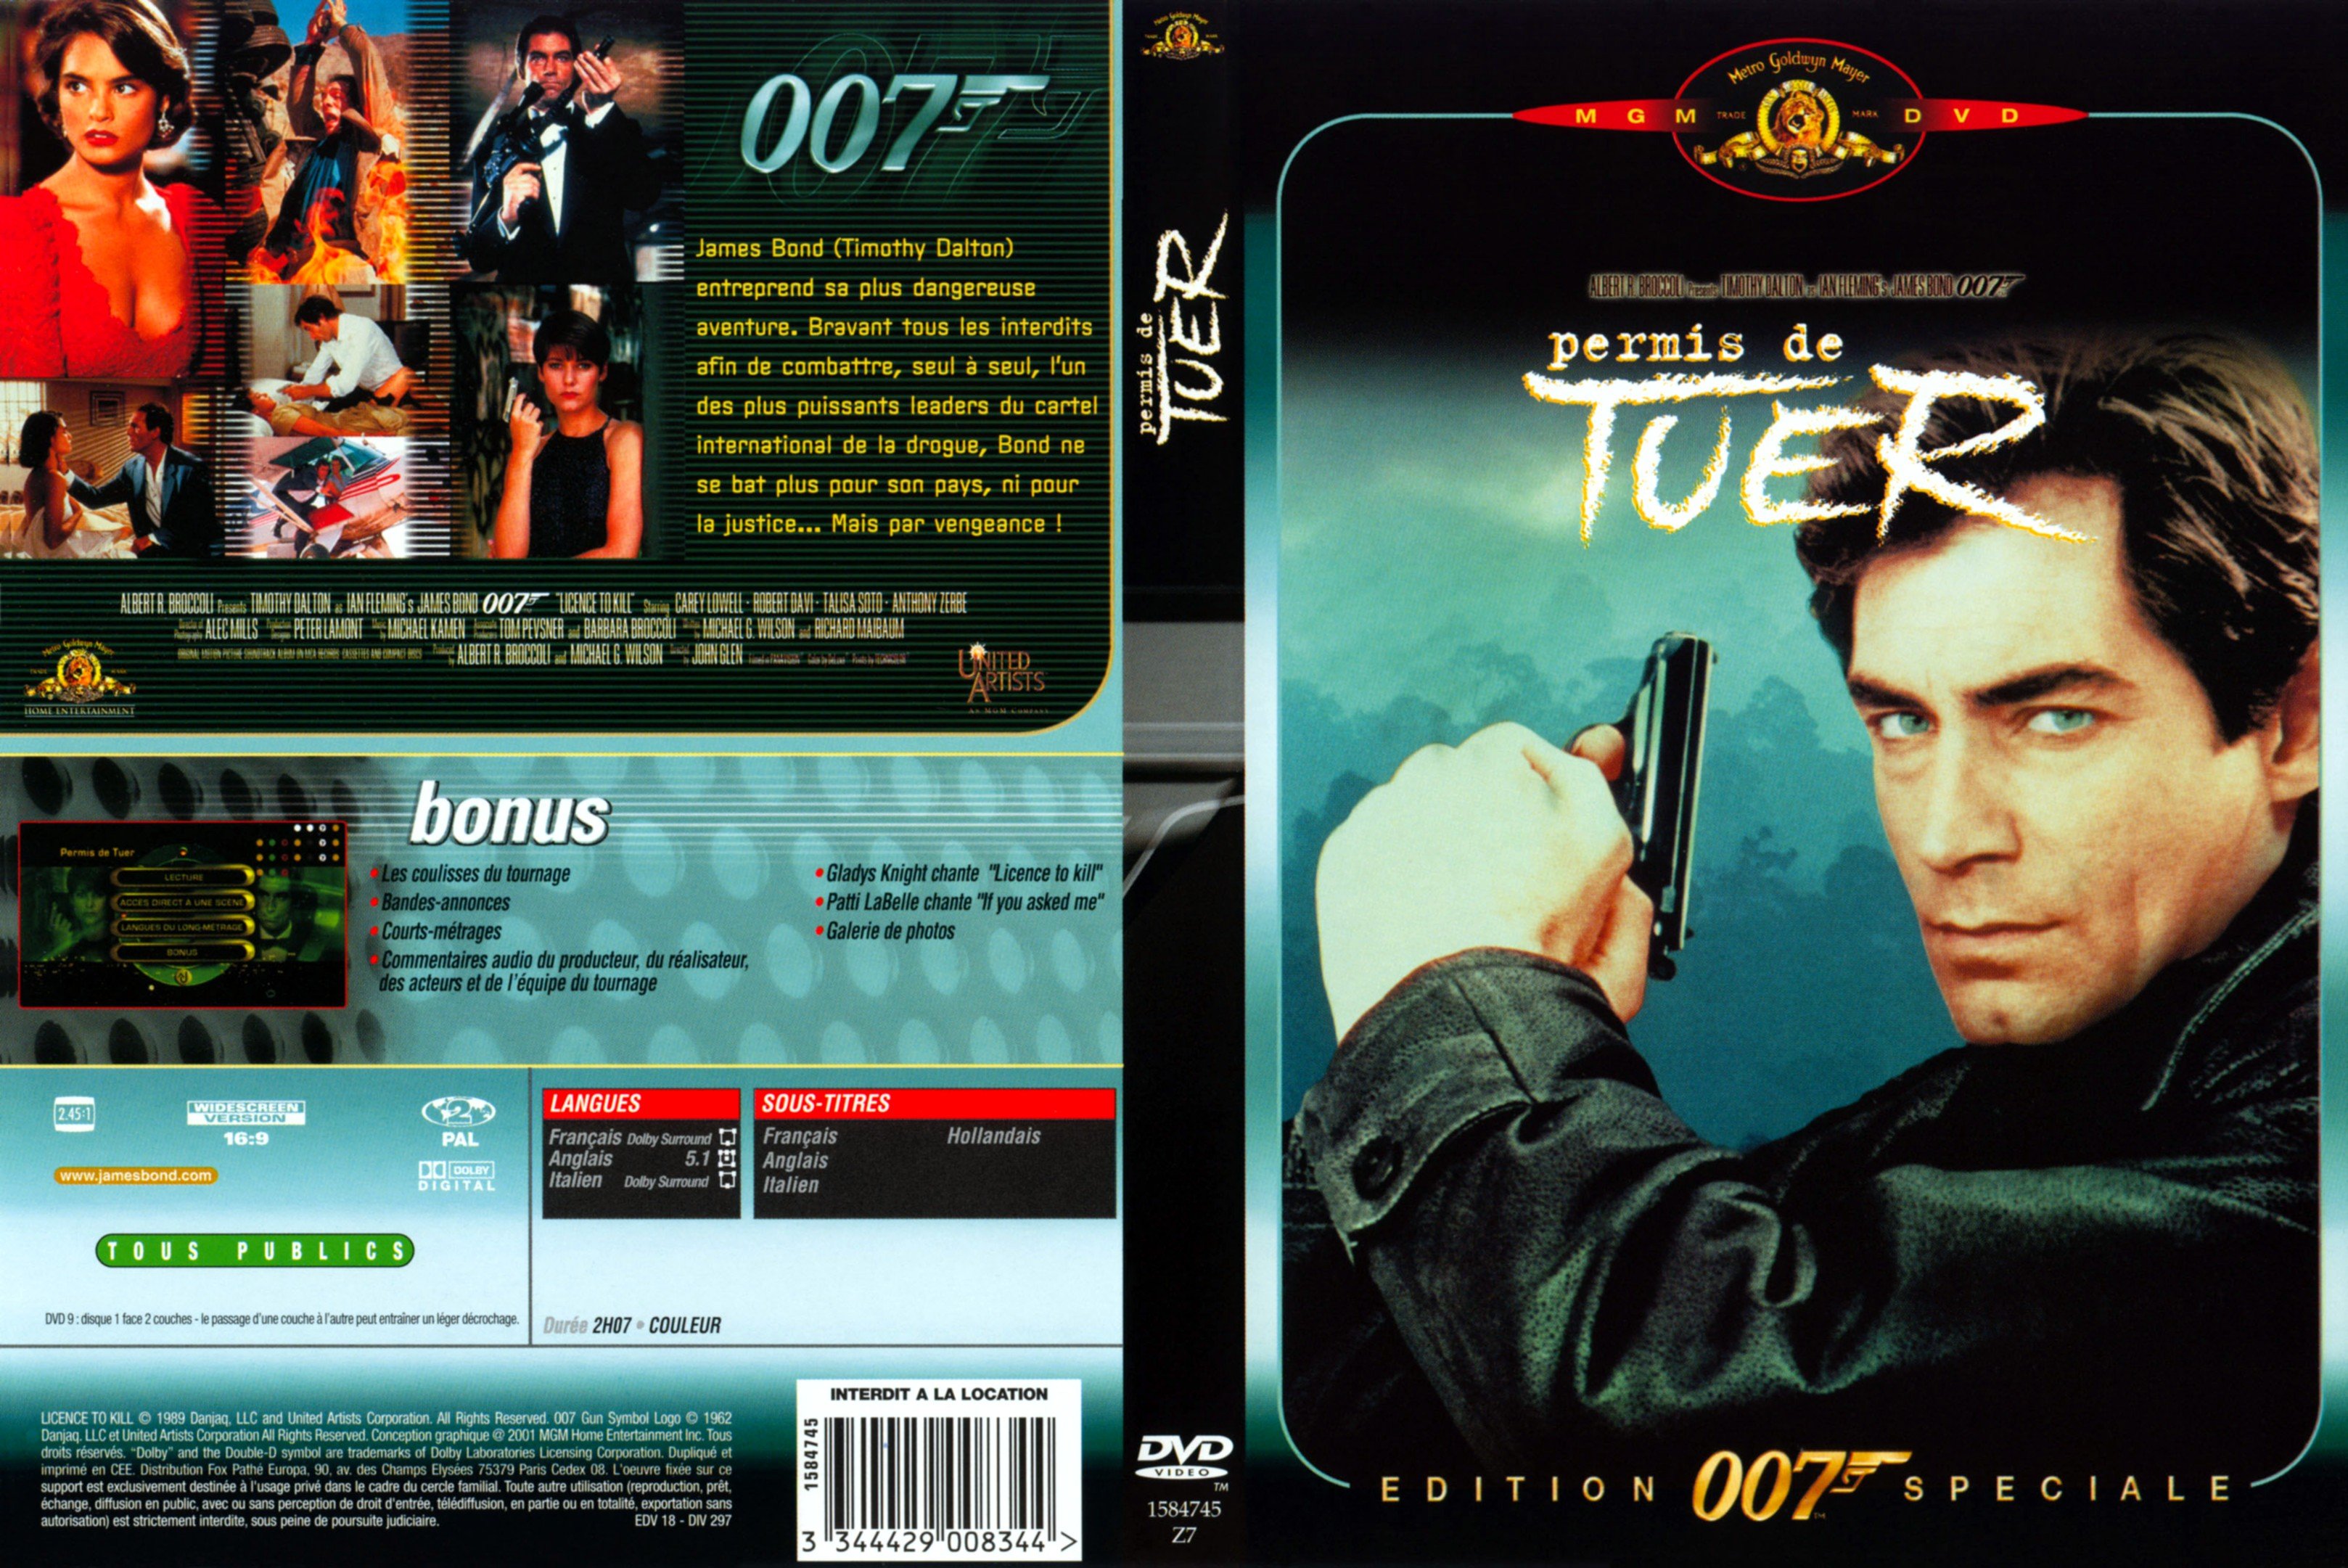 Jaquette DVD James Bond 007 Permis de tuer